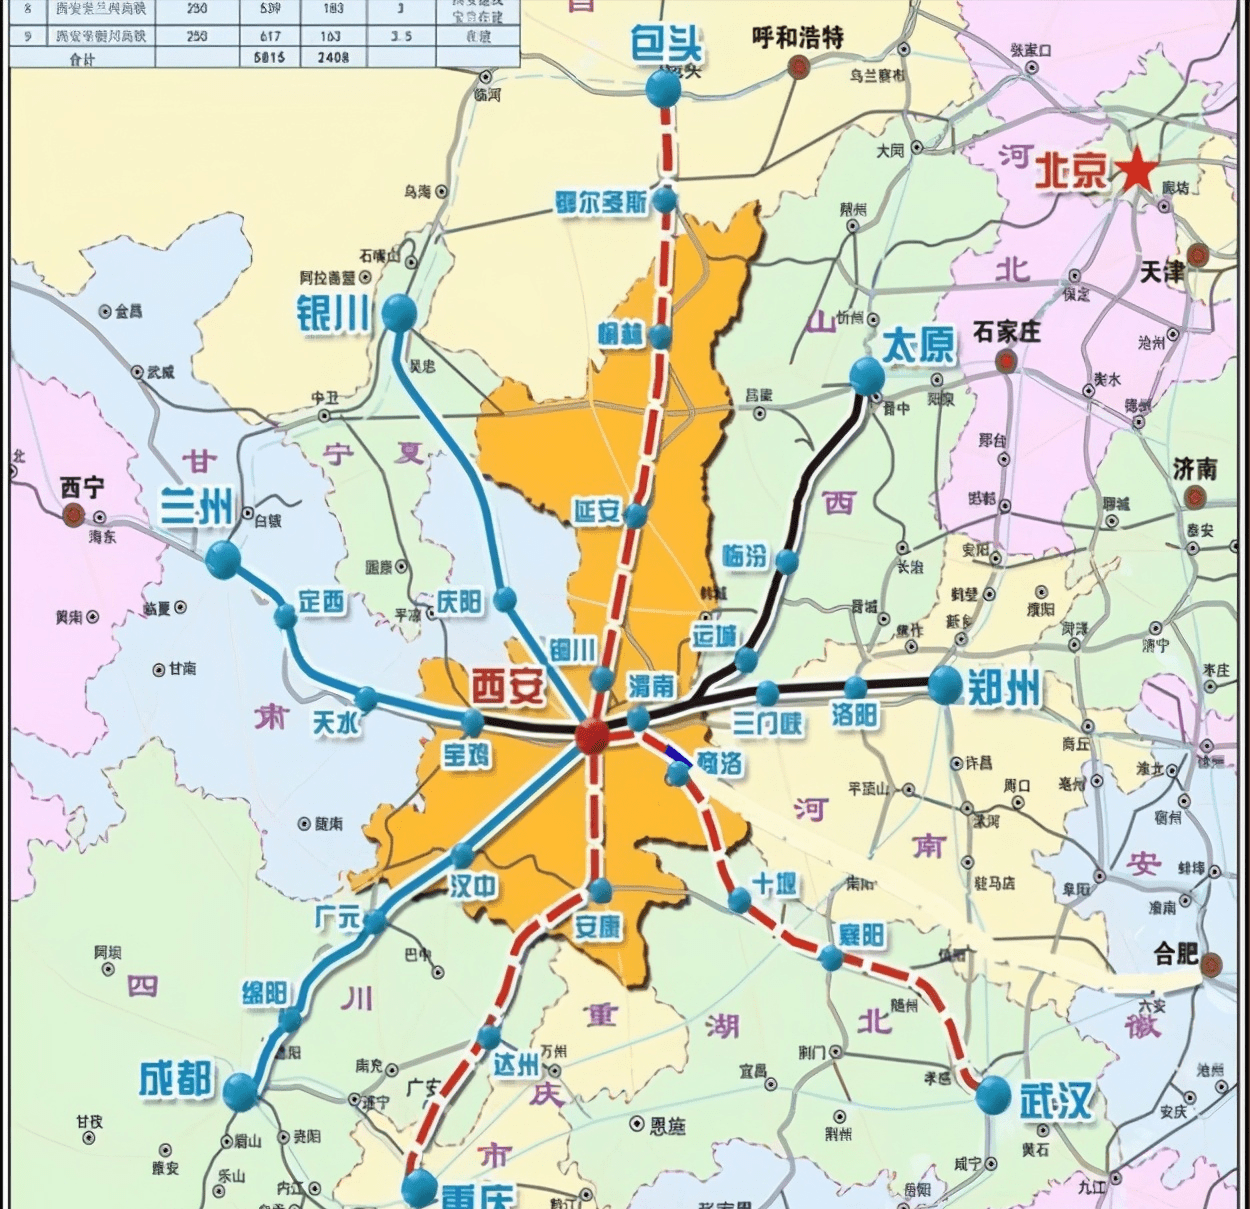 郑州,武汉,西安,谁将是未来的国家级高铁枢纽?